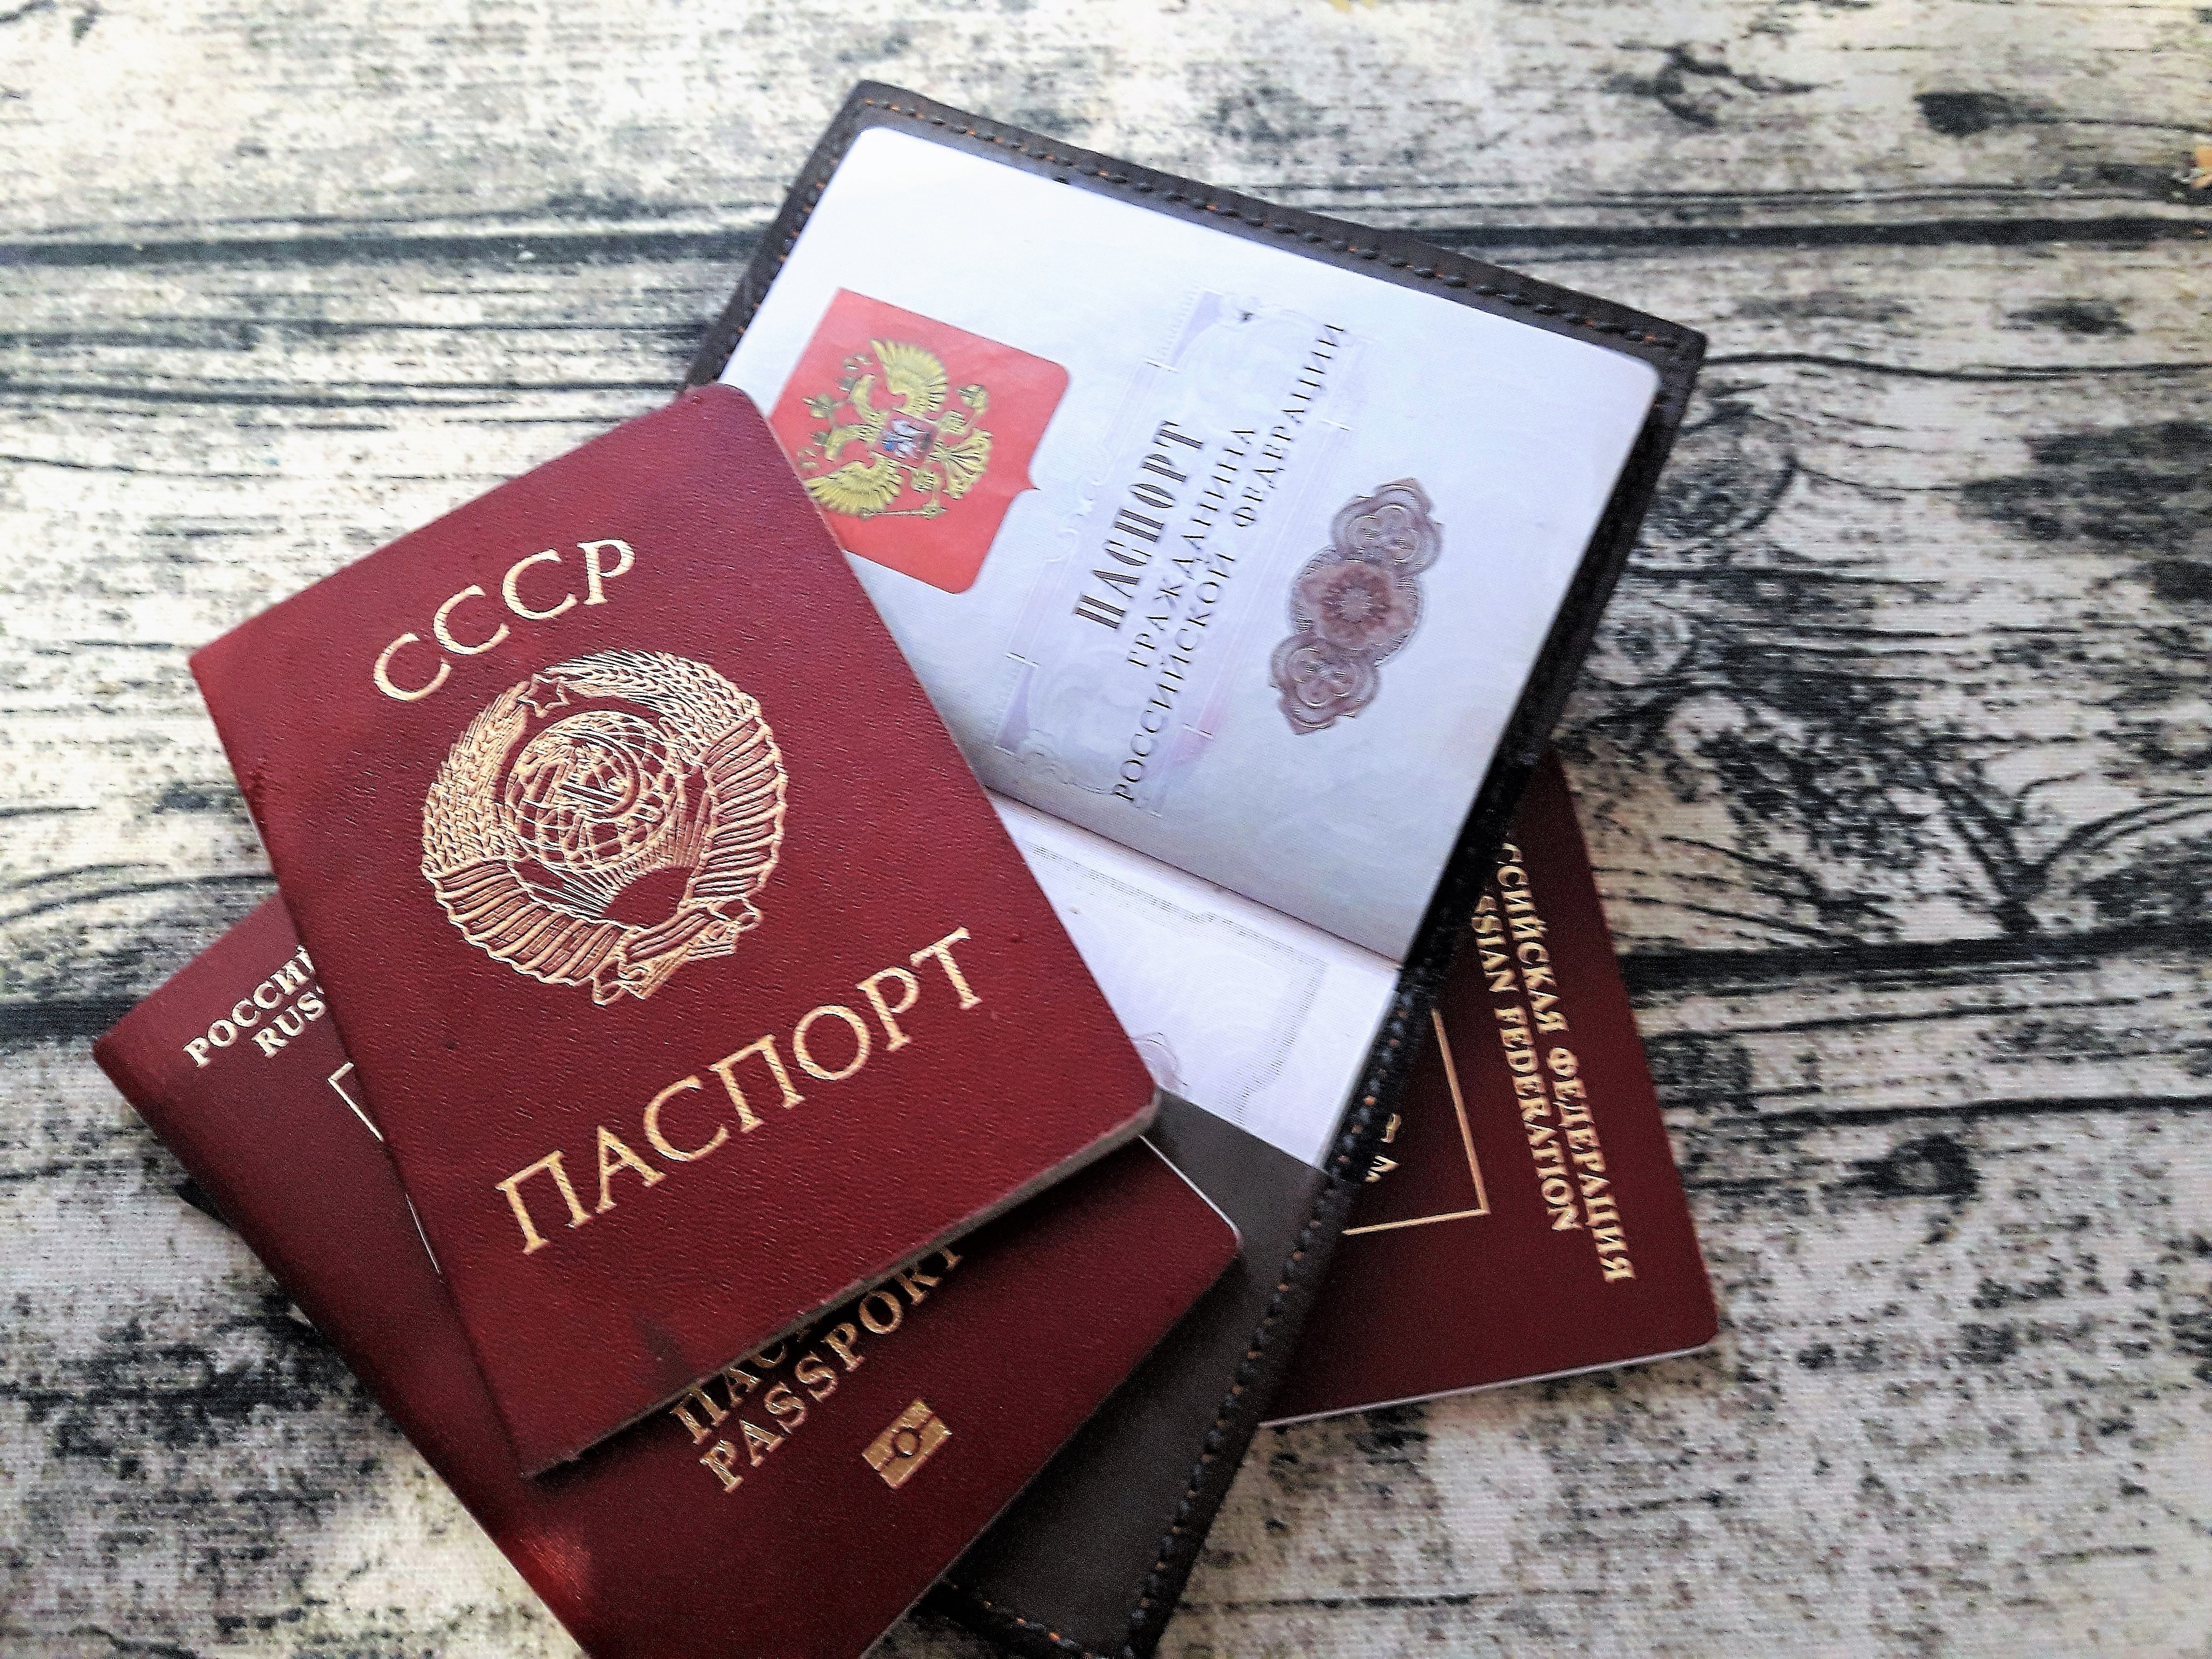   Можно ли ездить на Украину по внутреннему паспорту России?